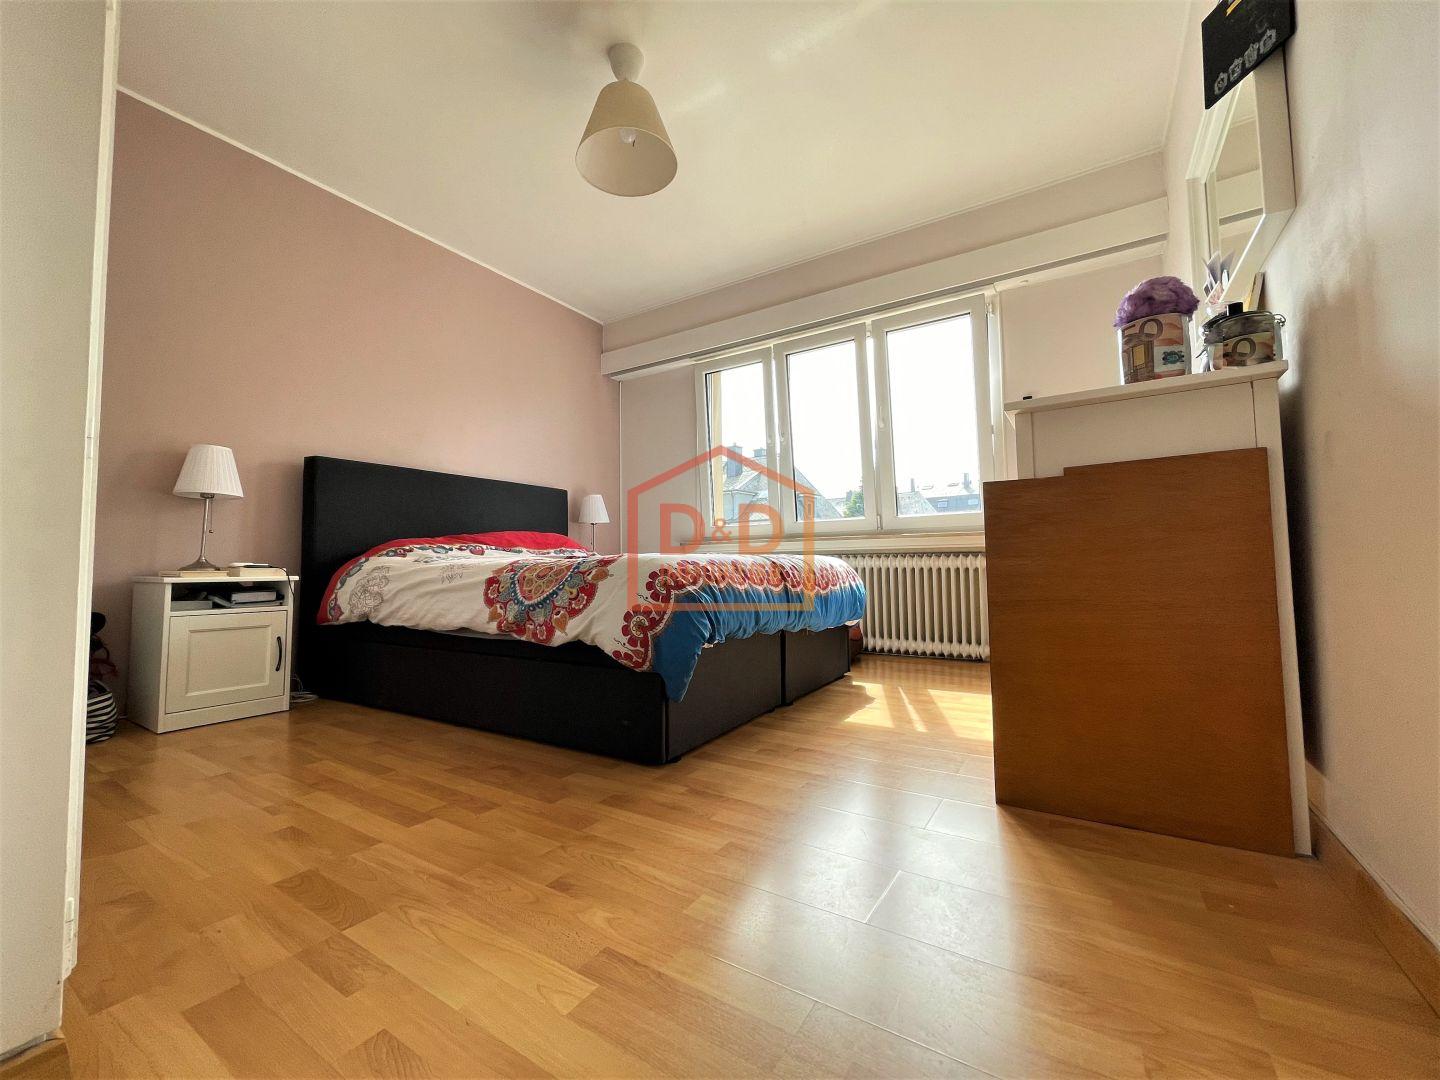 Appartement à Howald, 75 m², 2 chambres, 1 salle de bain, 1 garage, 826 590 €